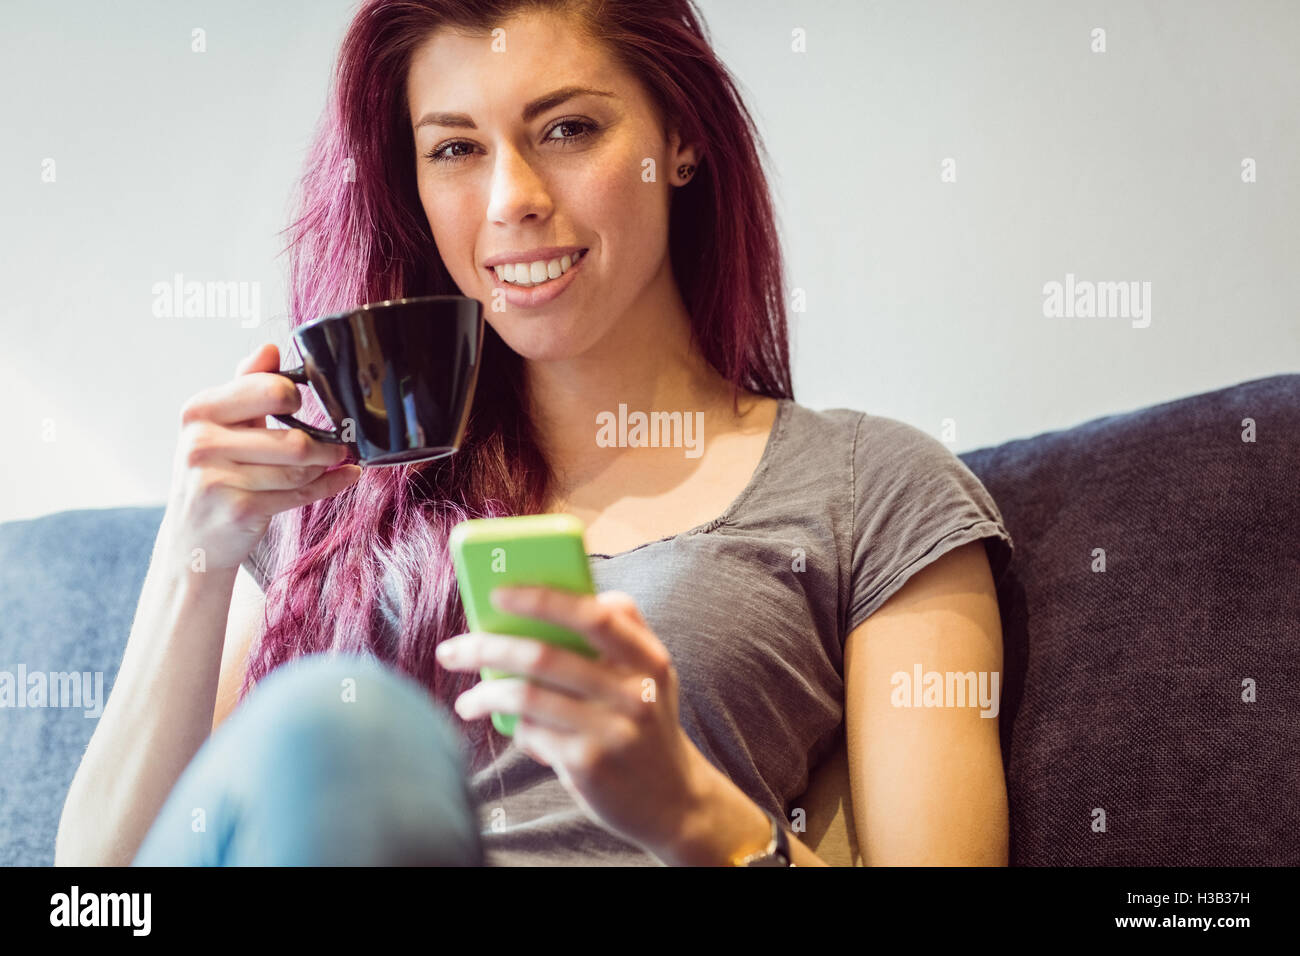 Lässige Frau trinken eine Tasse Kaffee mit einem smartphone Stockfoto